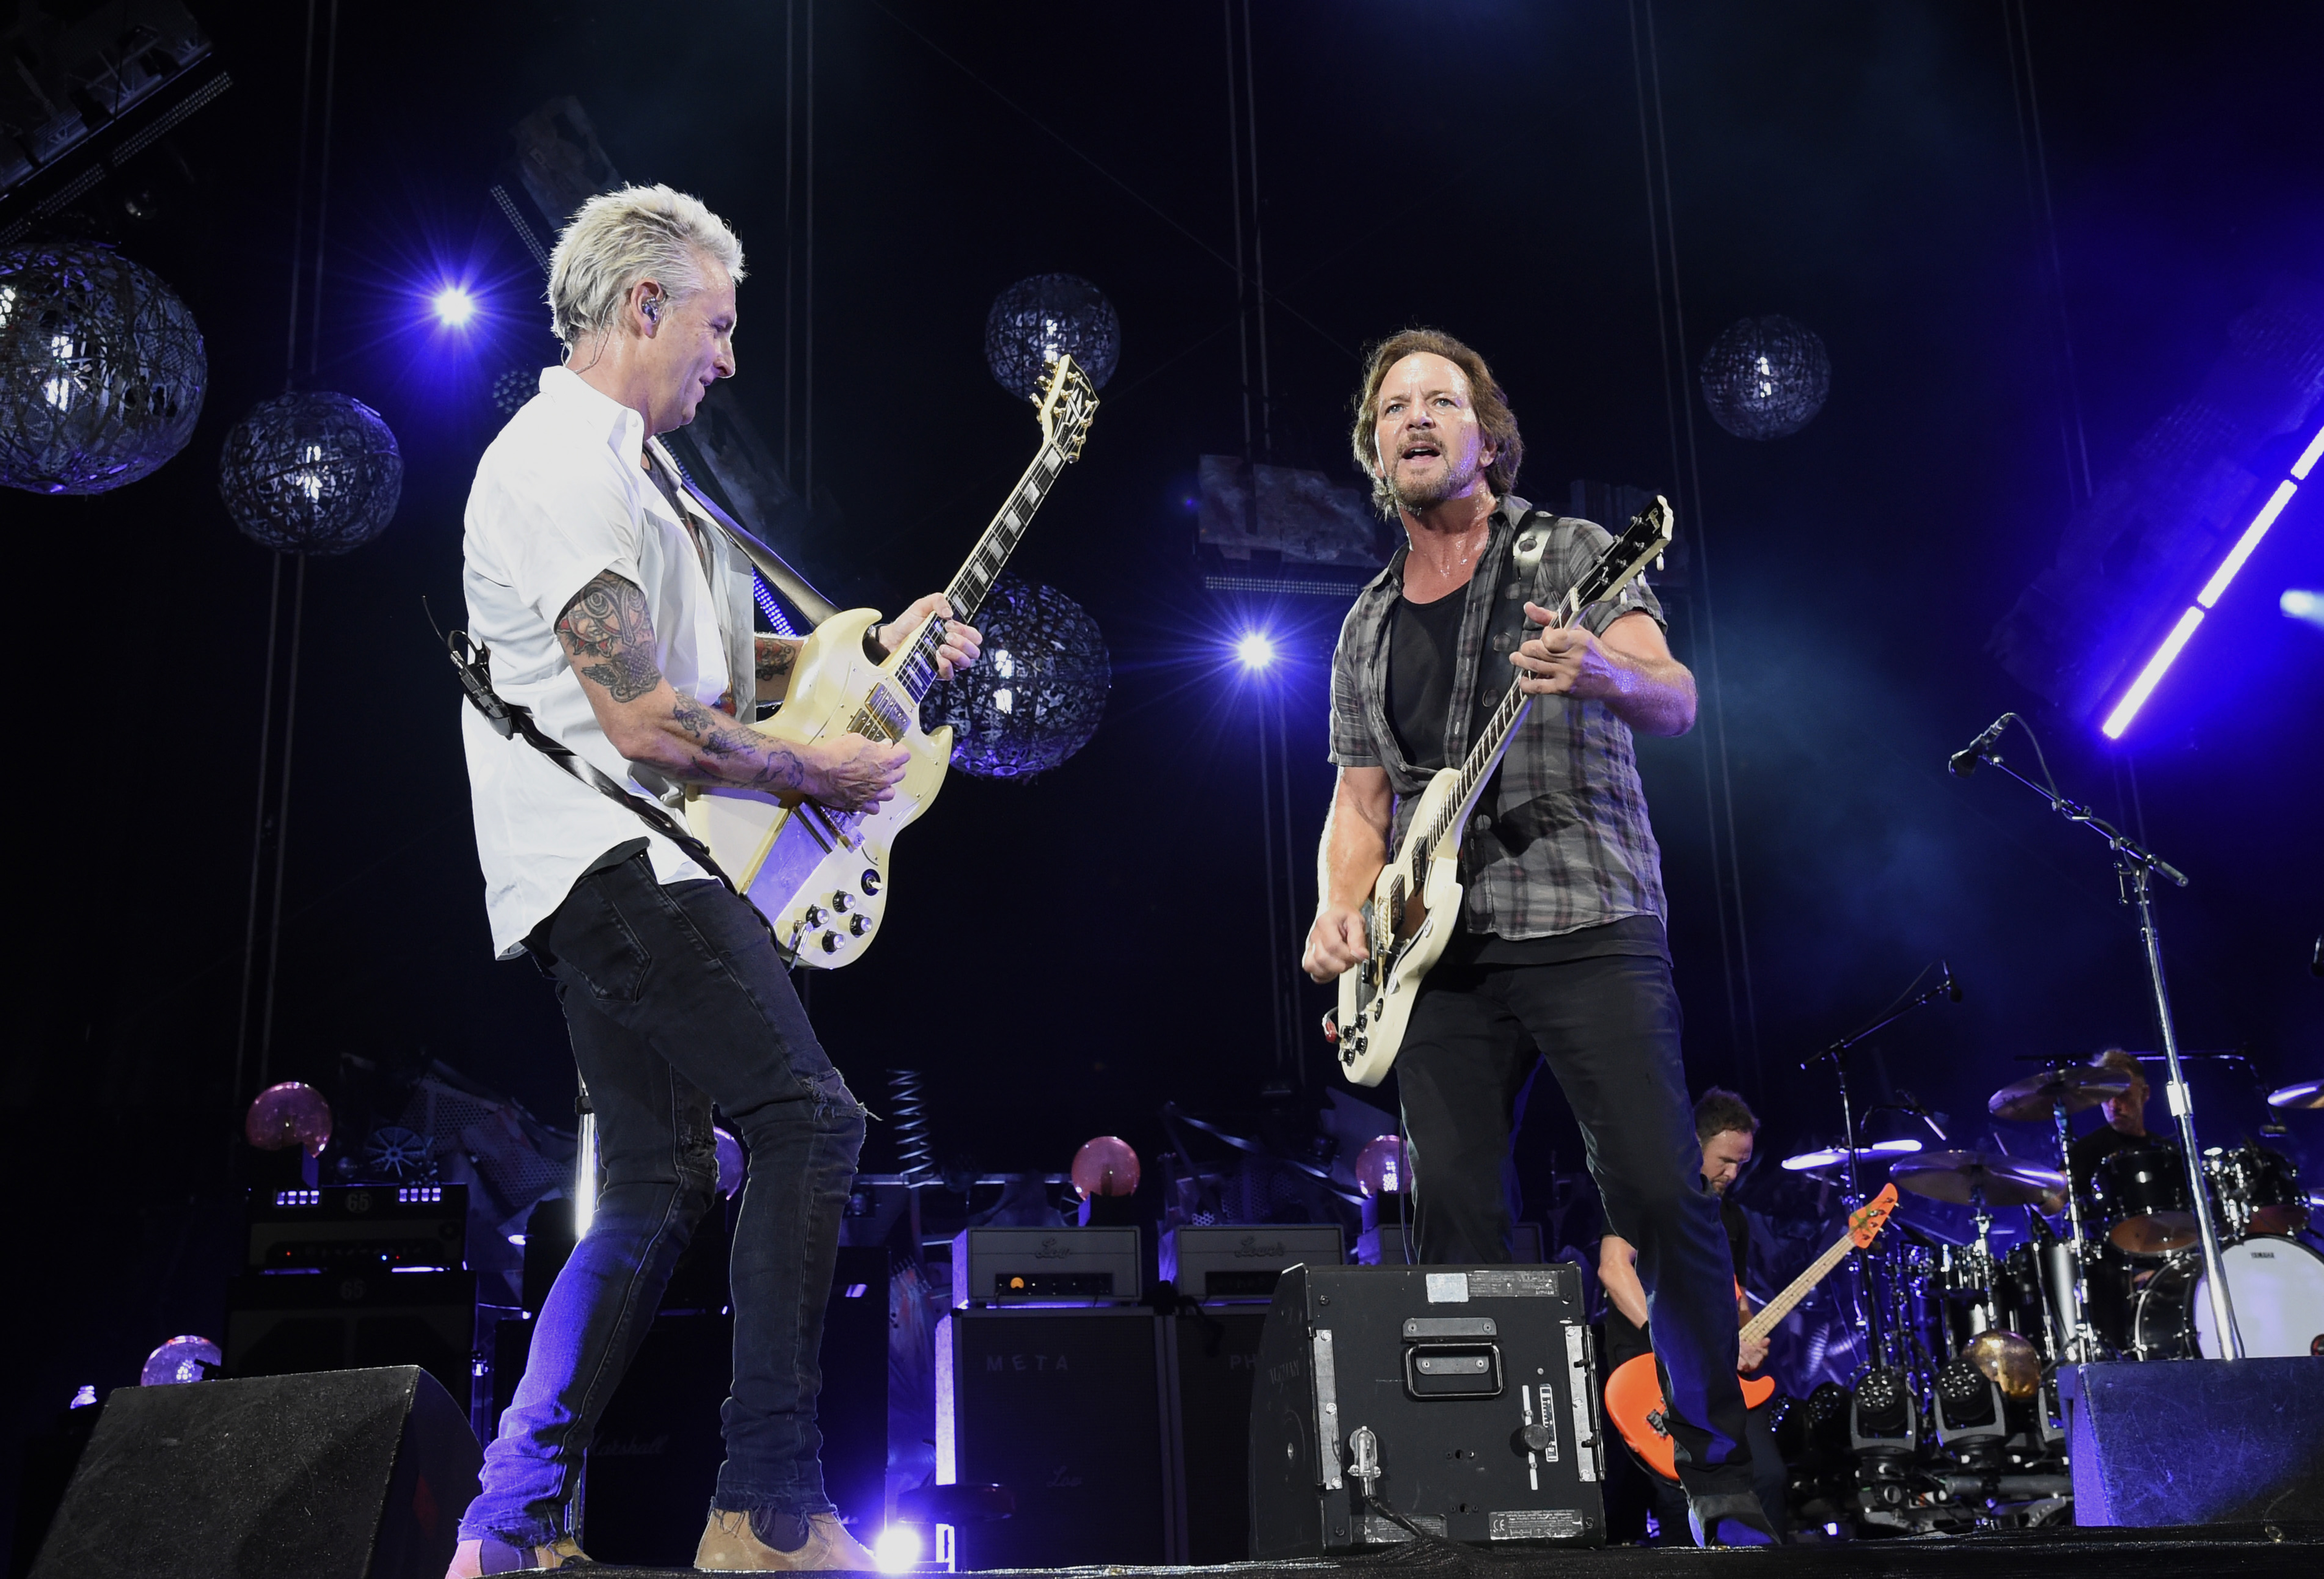 Pearl Jam im September 2018 im Fenway Park in Boston: Mike McCready und Eddie Vedder